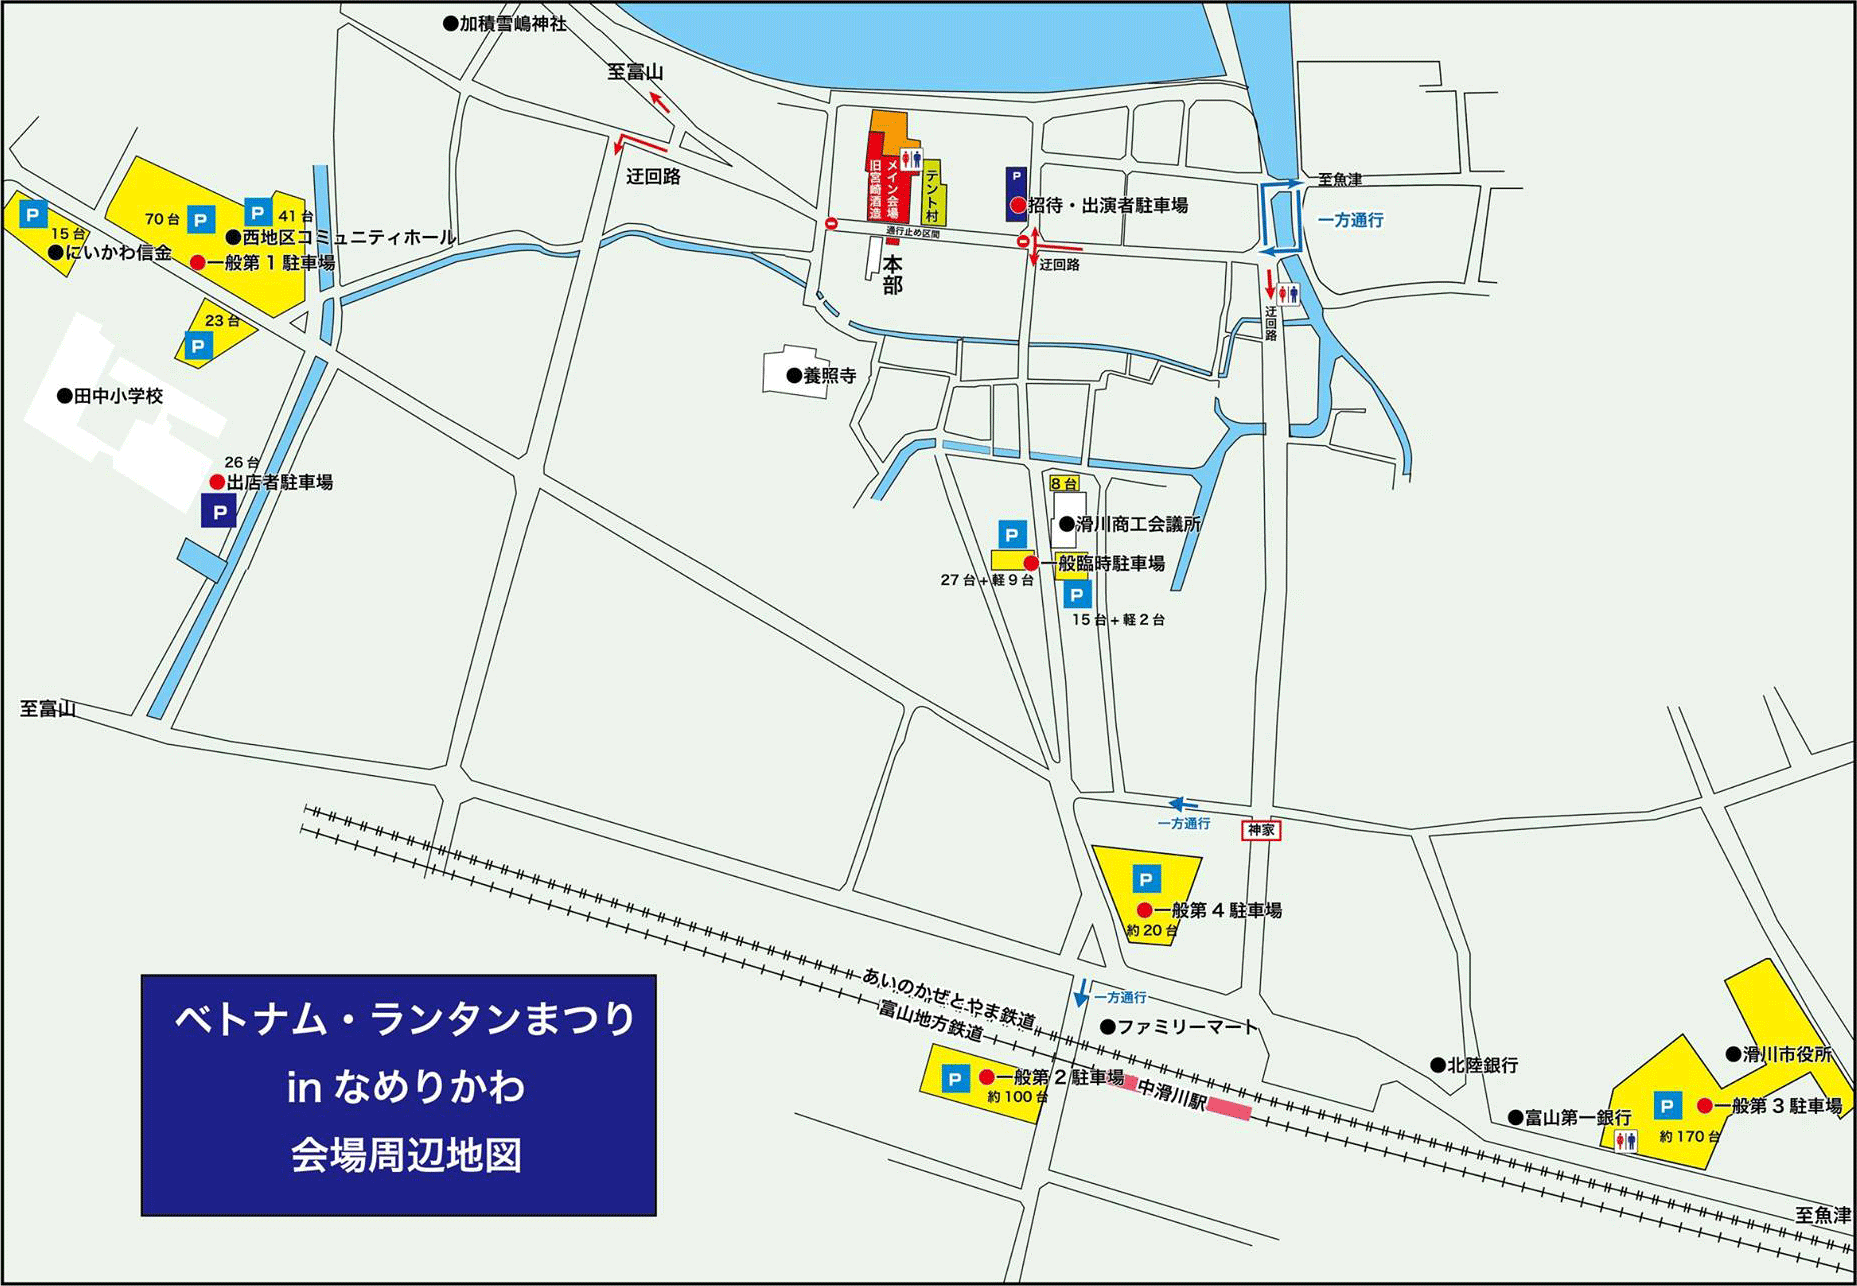 ベトナムランタンまつりin滑川2017の駐車場と交通規制の地図